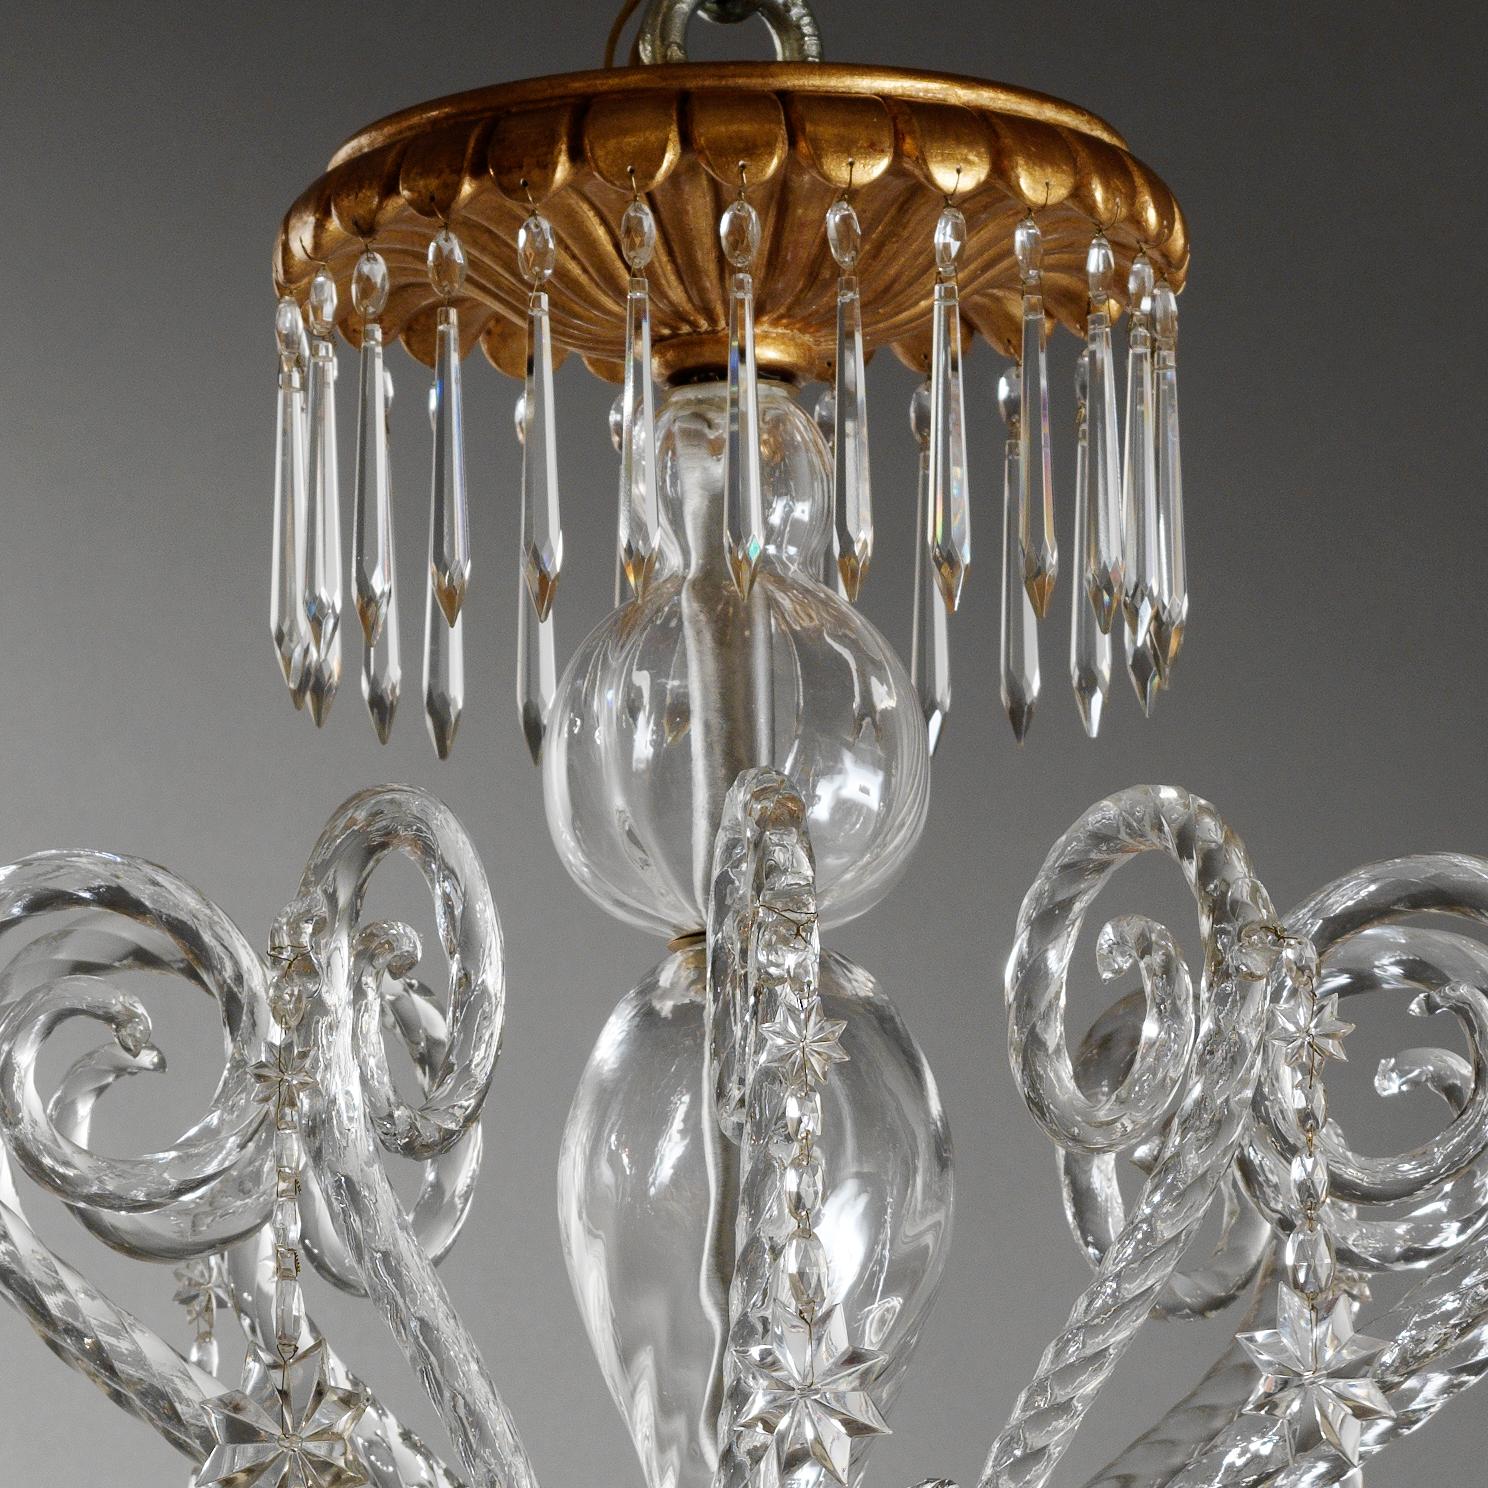 Elégant lustre italien de style Rococò par Gherardo Degli Albizzi, en verre soufflé, de couleur transparente avec bois doré. La couronne supérieure est ornée de nombreux cristaux, tandis que la coupe du milieu contient de nombreuses pastorales d'où